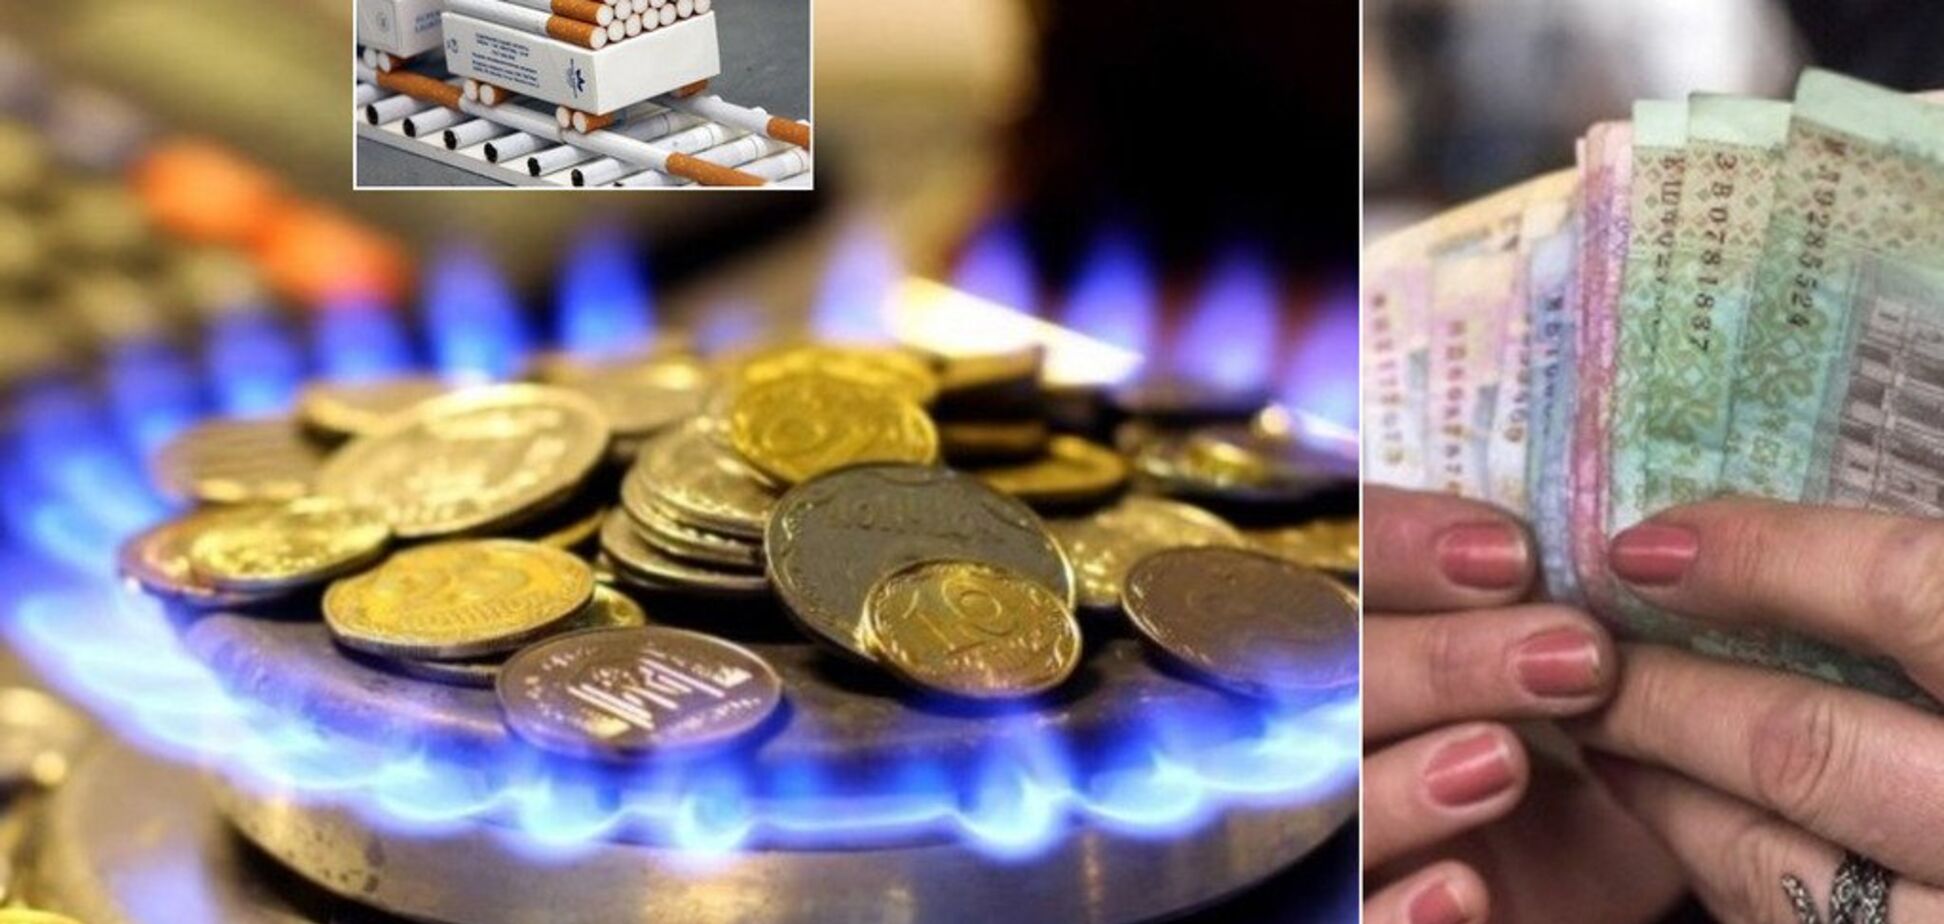 Тарифы на газ и свет, повышение пенсий и цен на сигареты: что ждет украинцев в июле